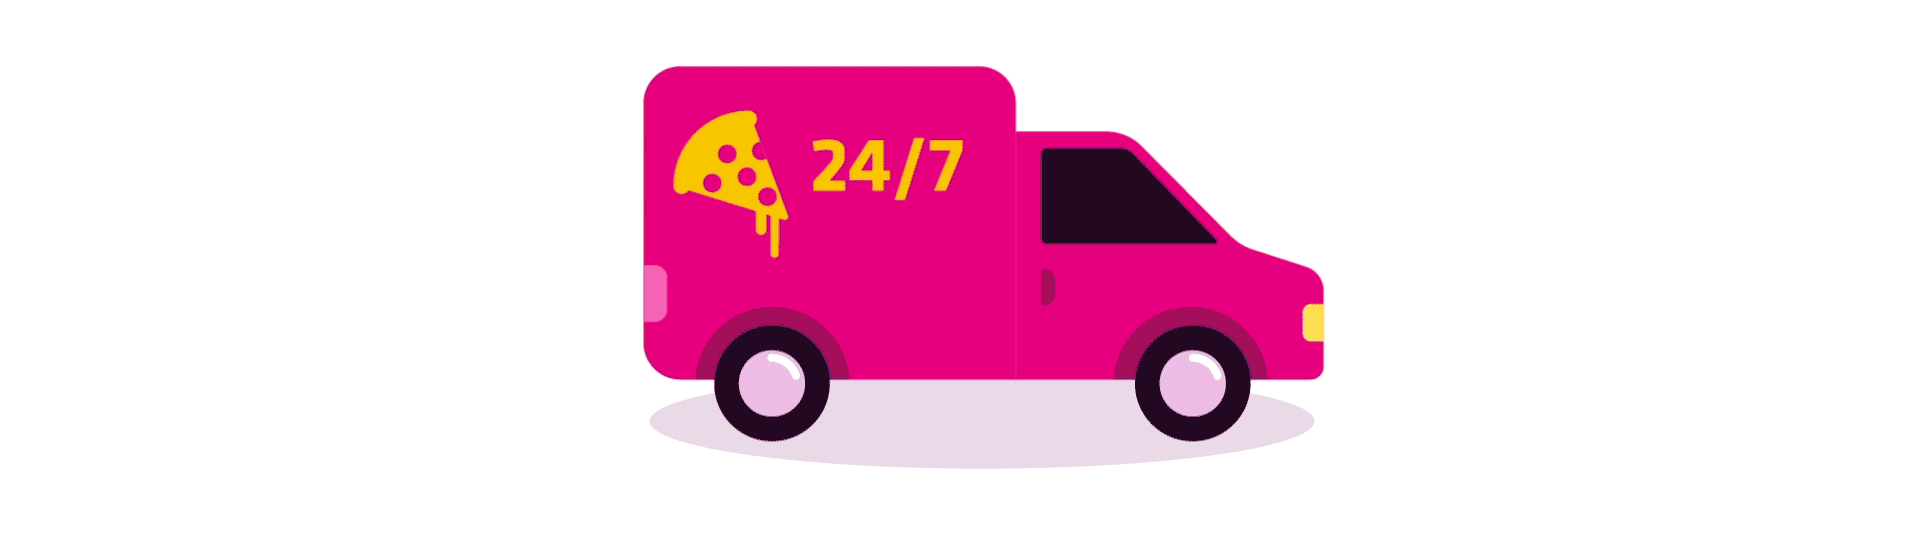 Pizza car